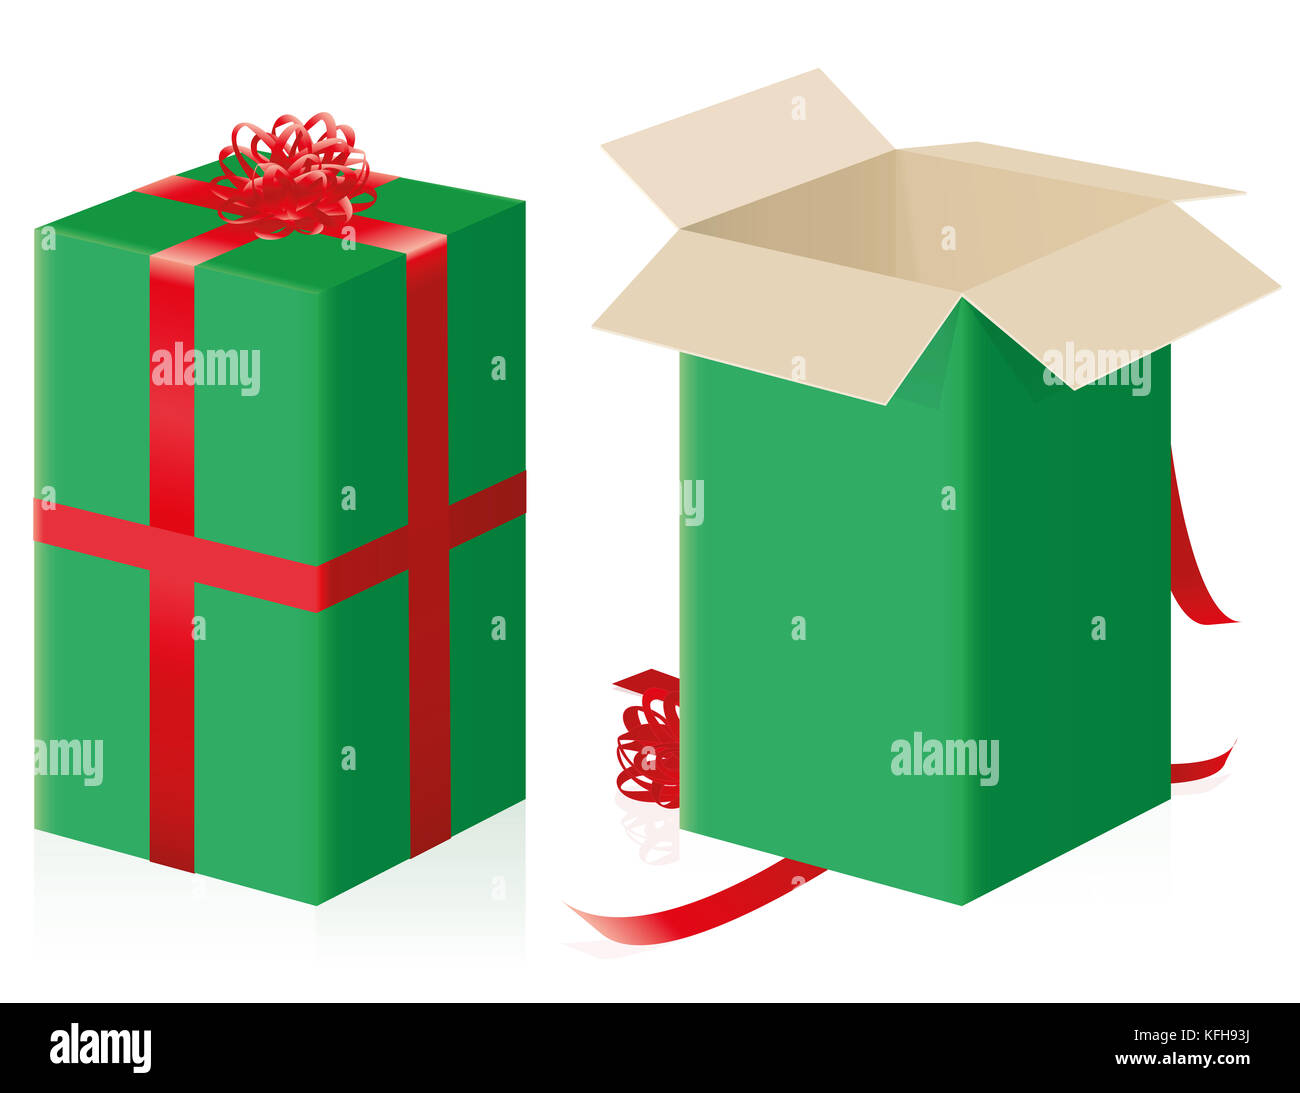 Geöffnet Geschlossen ein Geschenkpaket - hohe Größe Paket mit grünen Geschenkpapier und roten Bändern - Abbildung auf weißem Hintergrund. Stockfoto